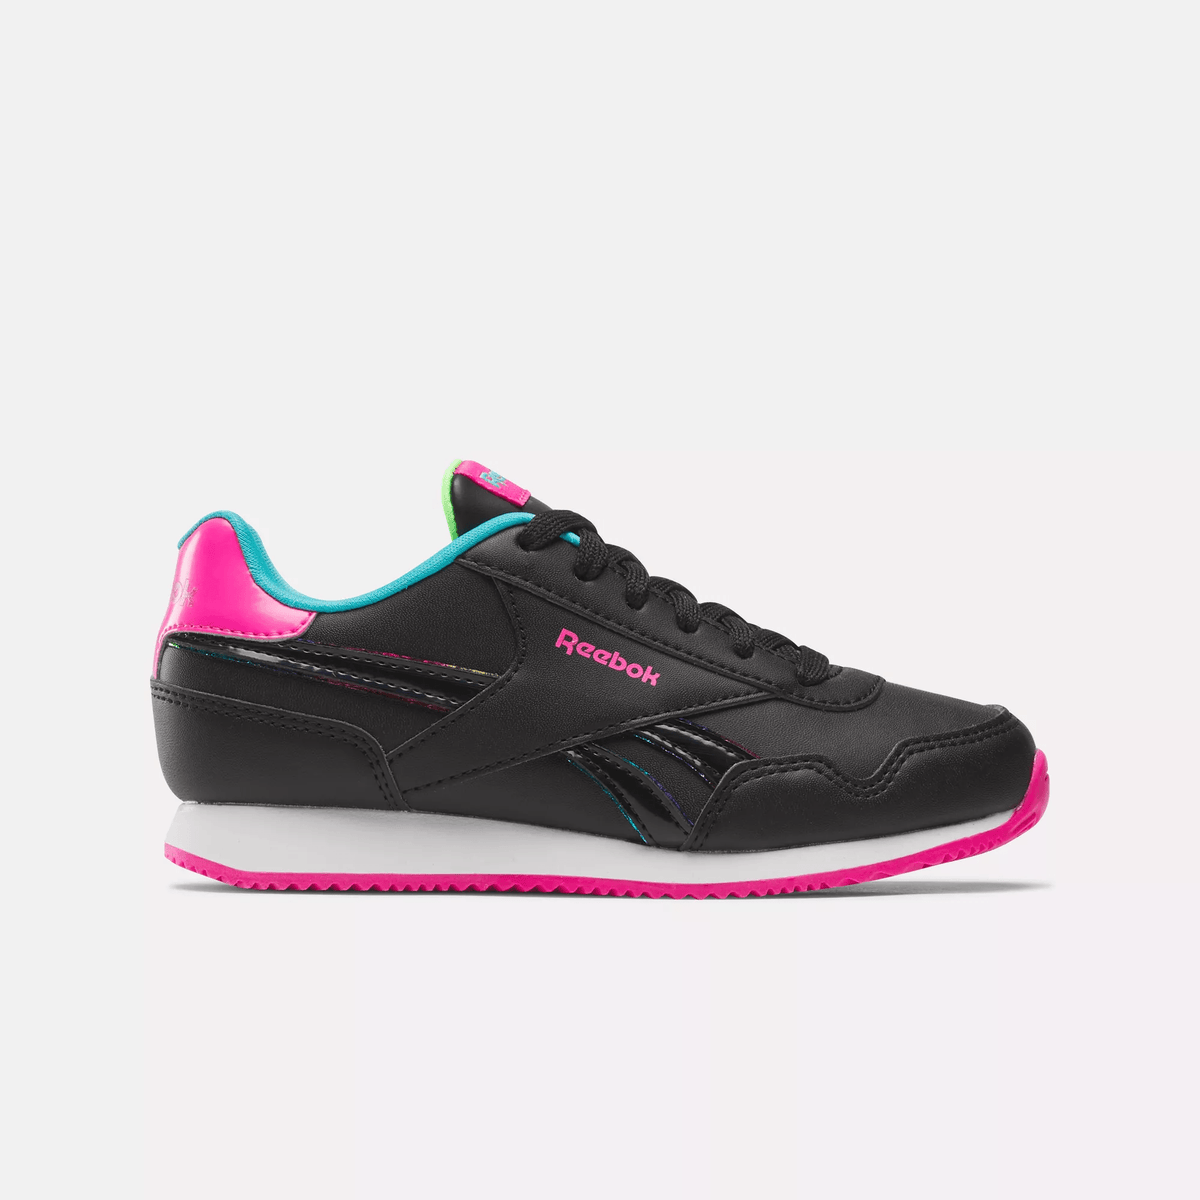 Reebok Women's Royal CL Jog 3.0 Shoes - Preschool Black